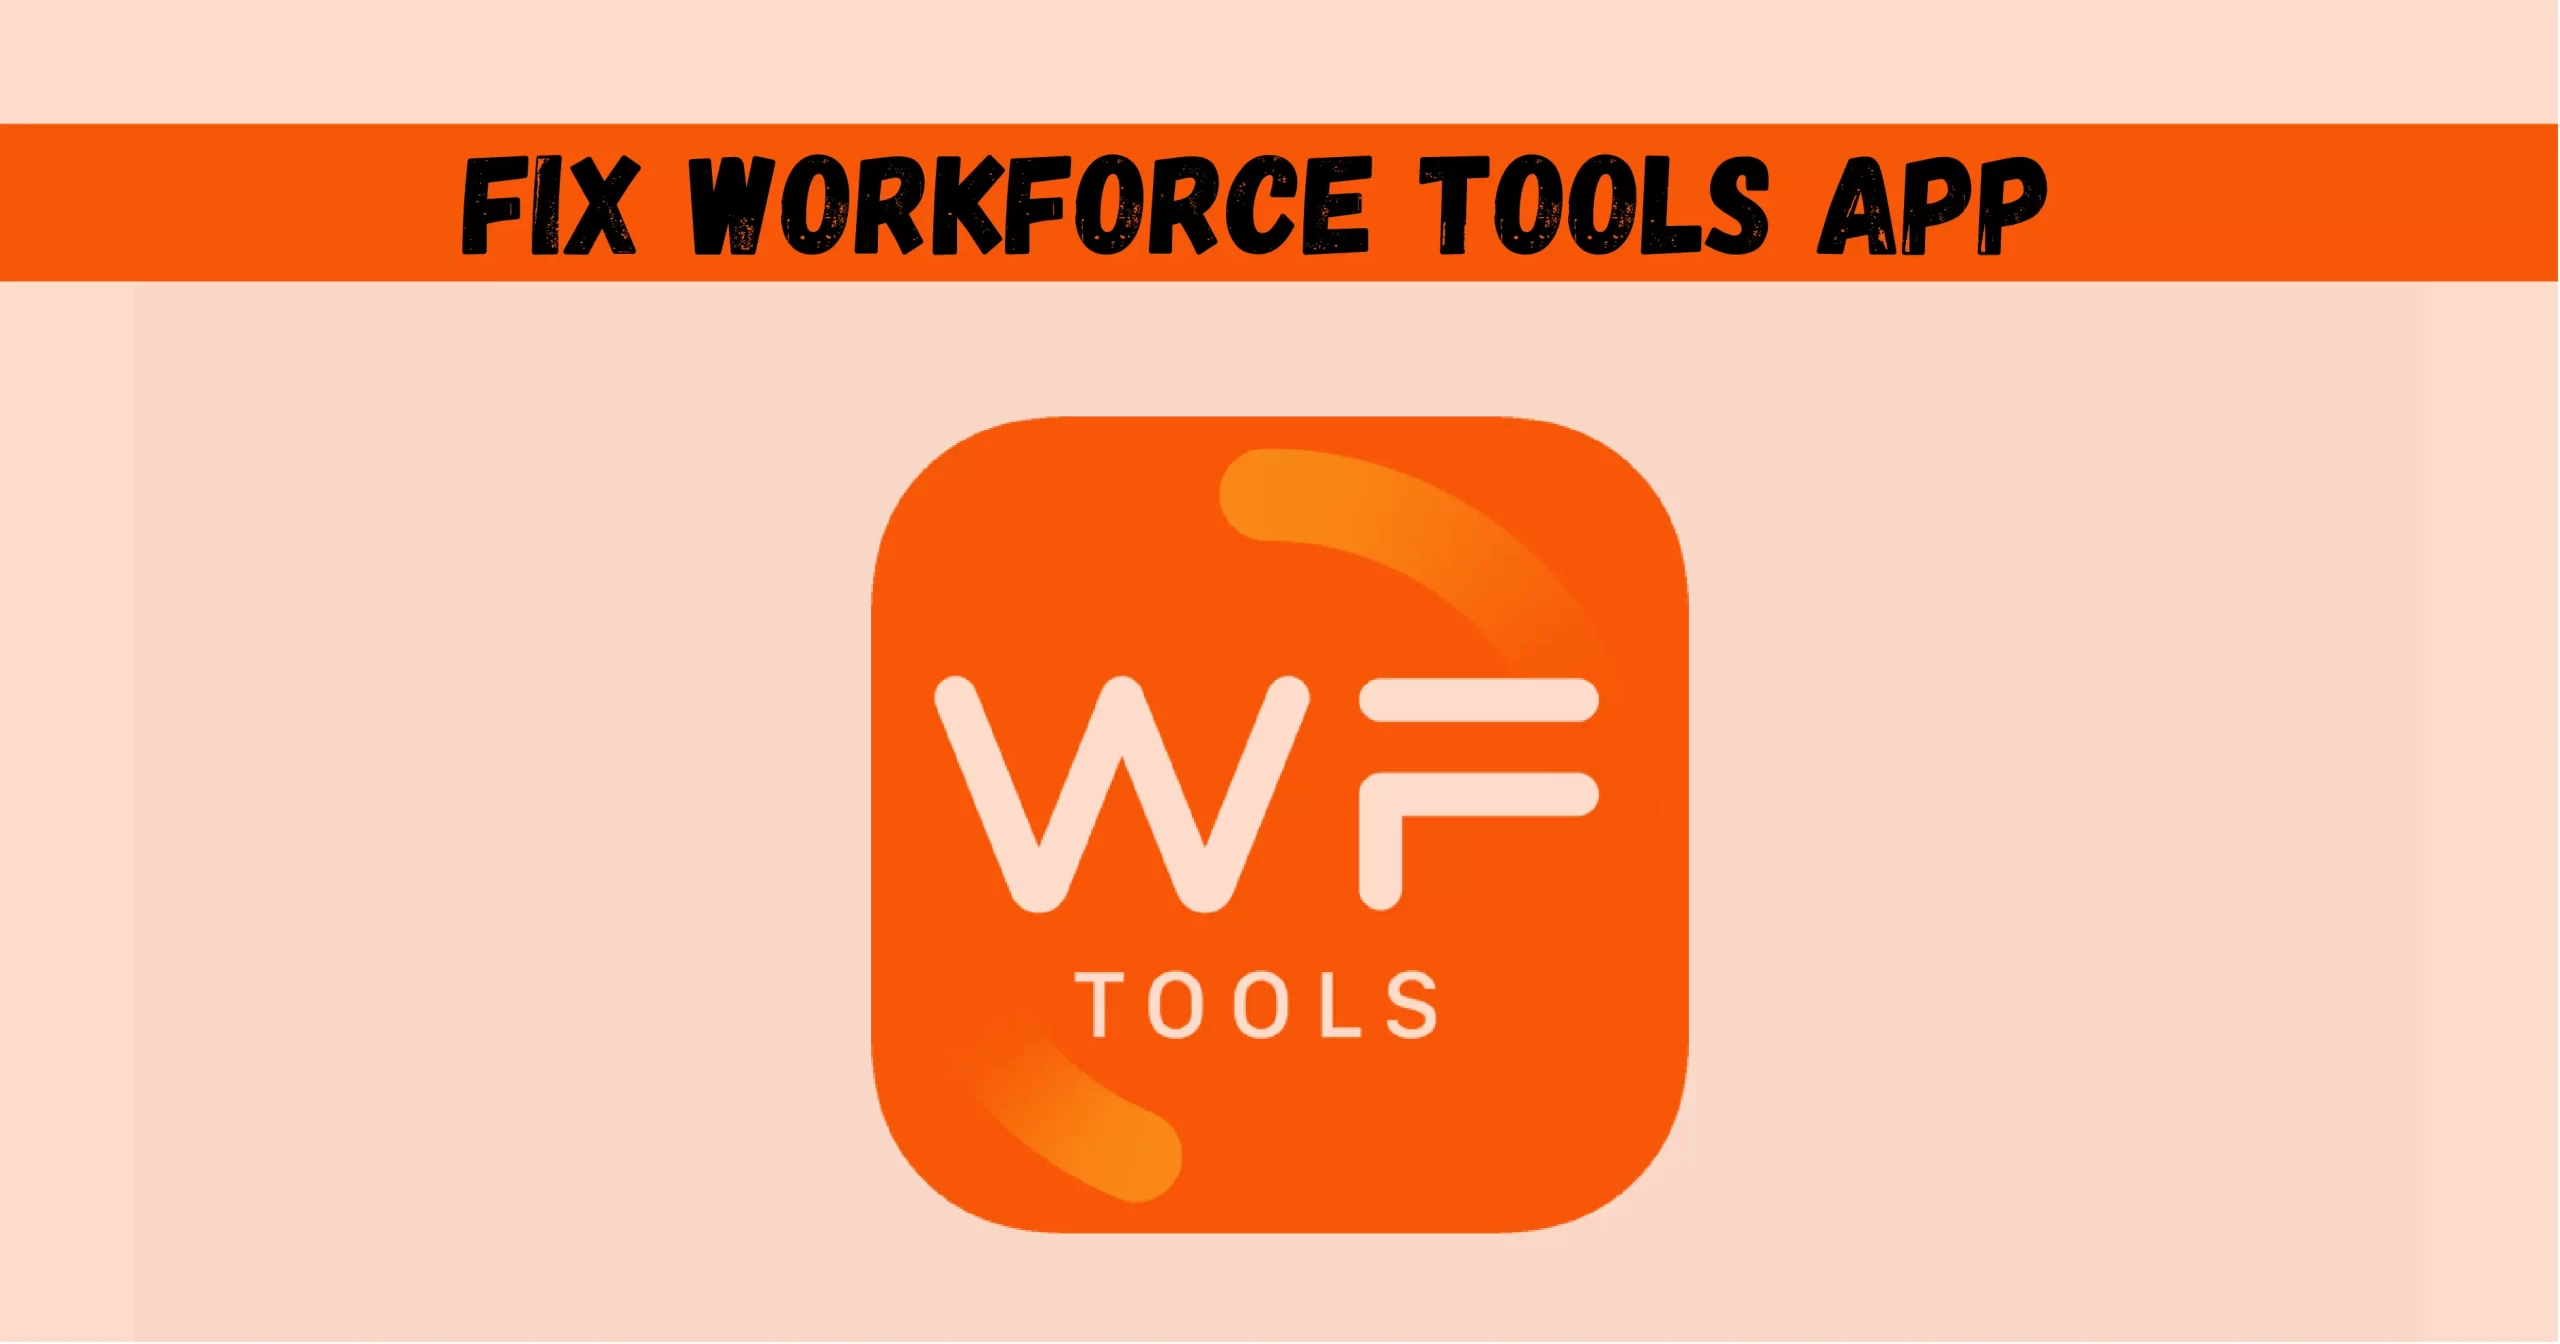 Workforce Tools App Not Working